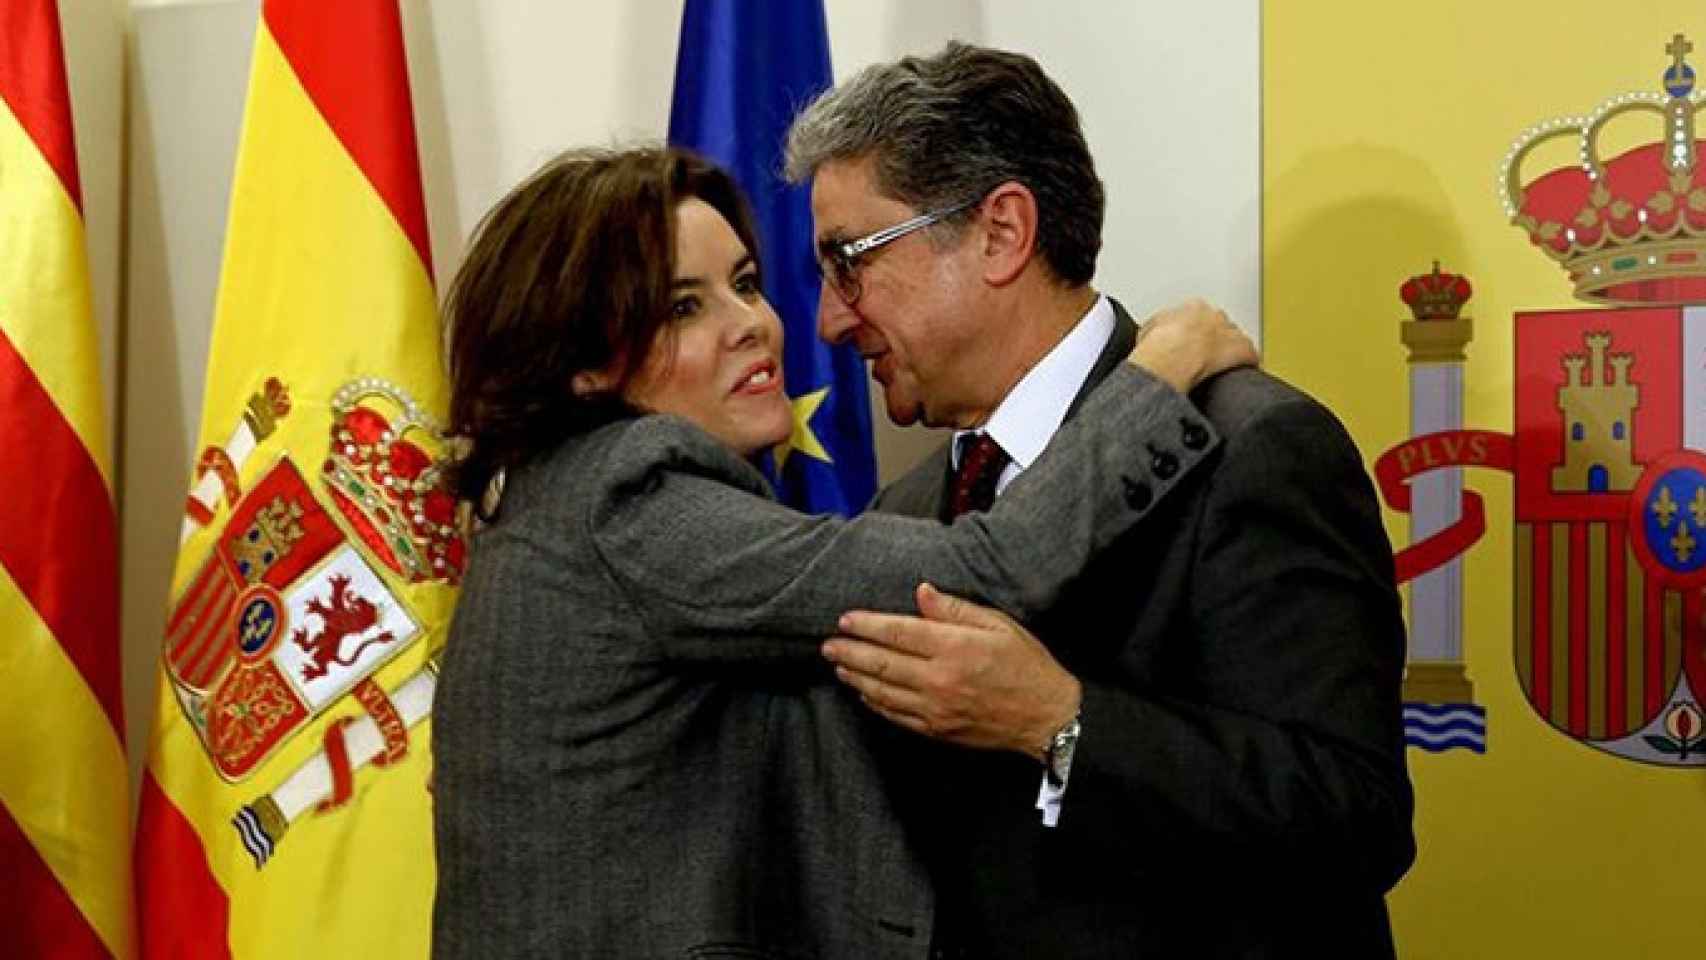 La vicepresidenta española Soraya Sáenz de Santamaría y el delegado del Gobierno en Cataluña, Enric Millo / EFE